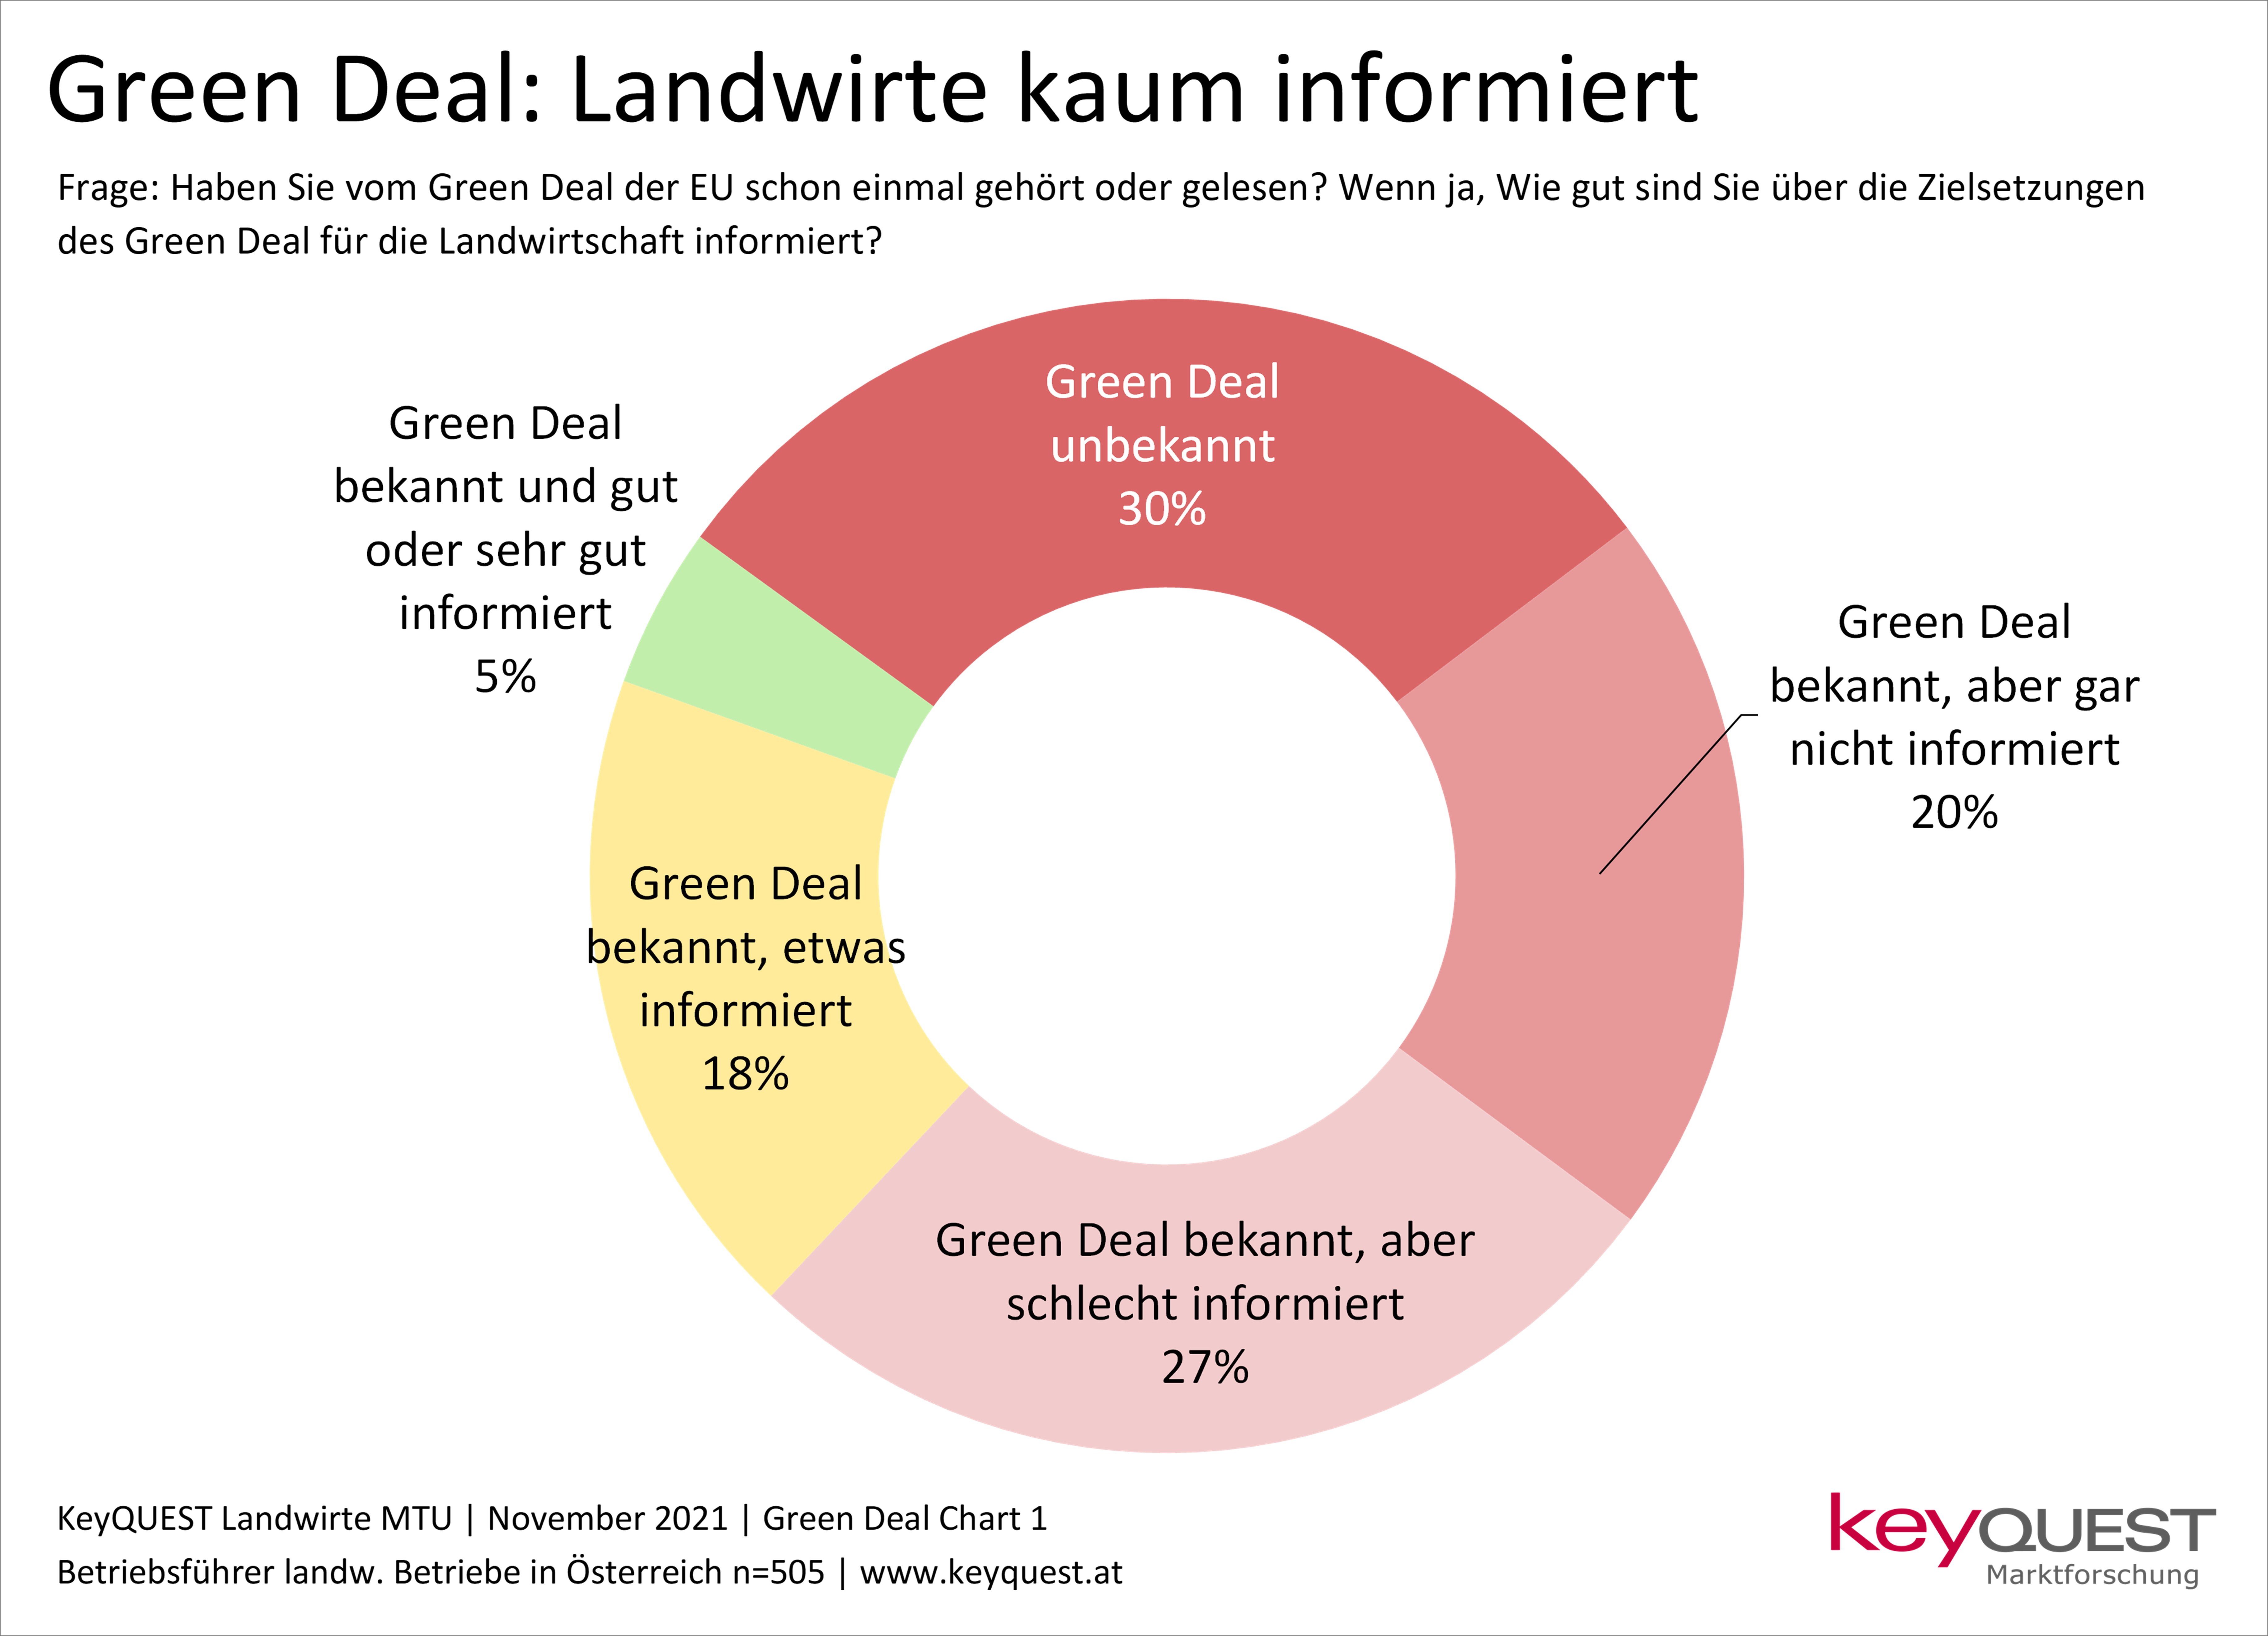 Kreisdiagramm zur Bekanntheit des Green Deal